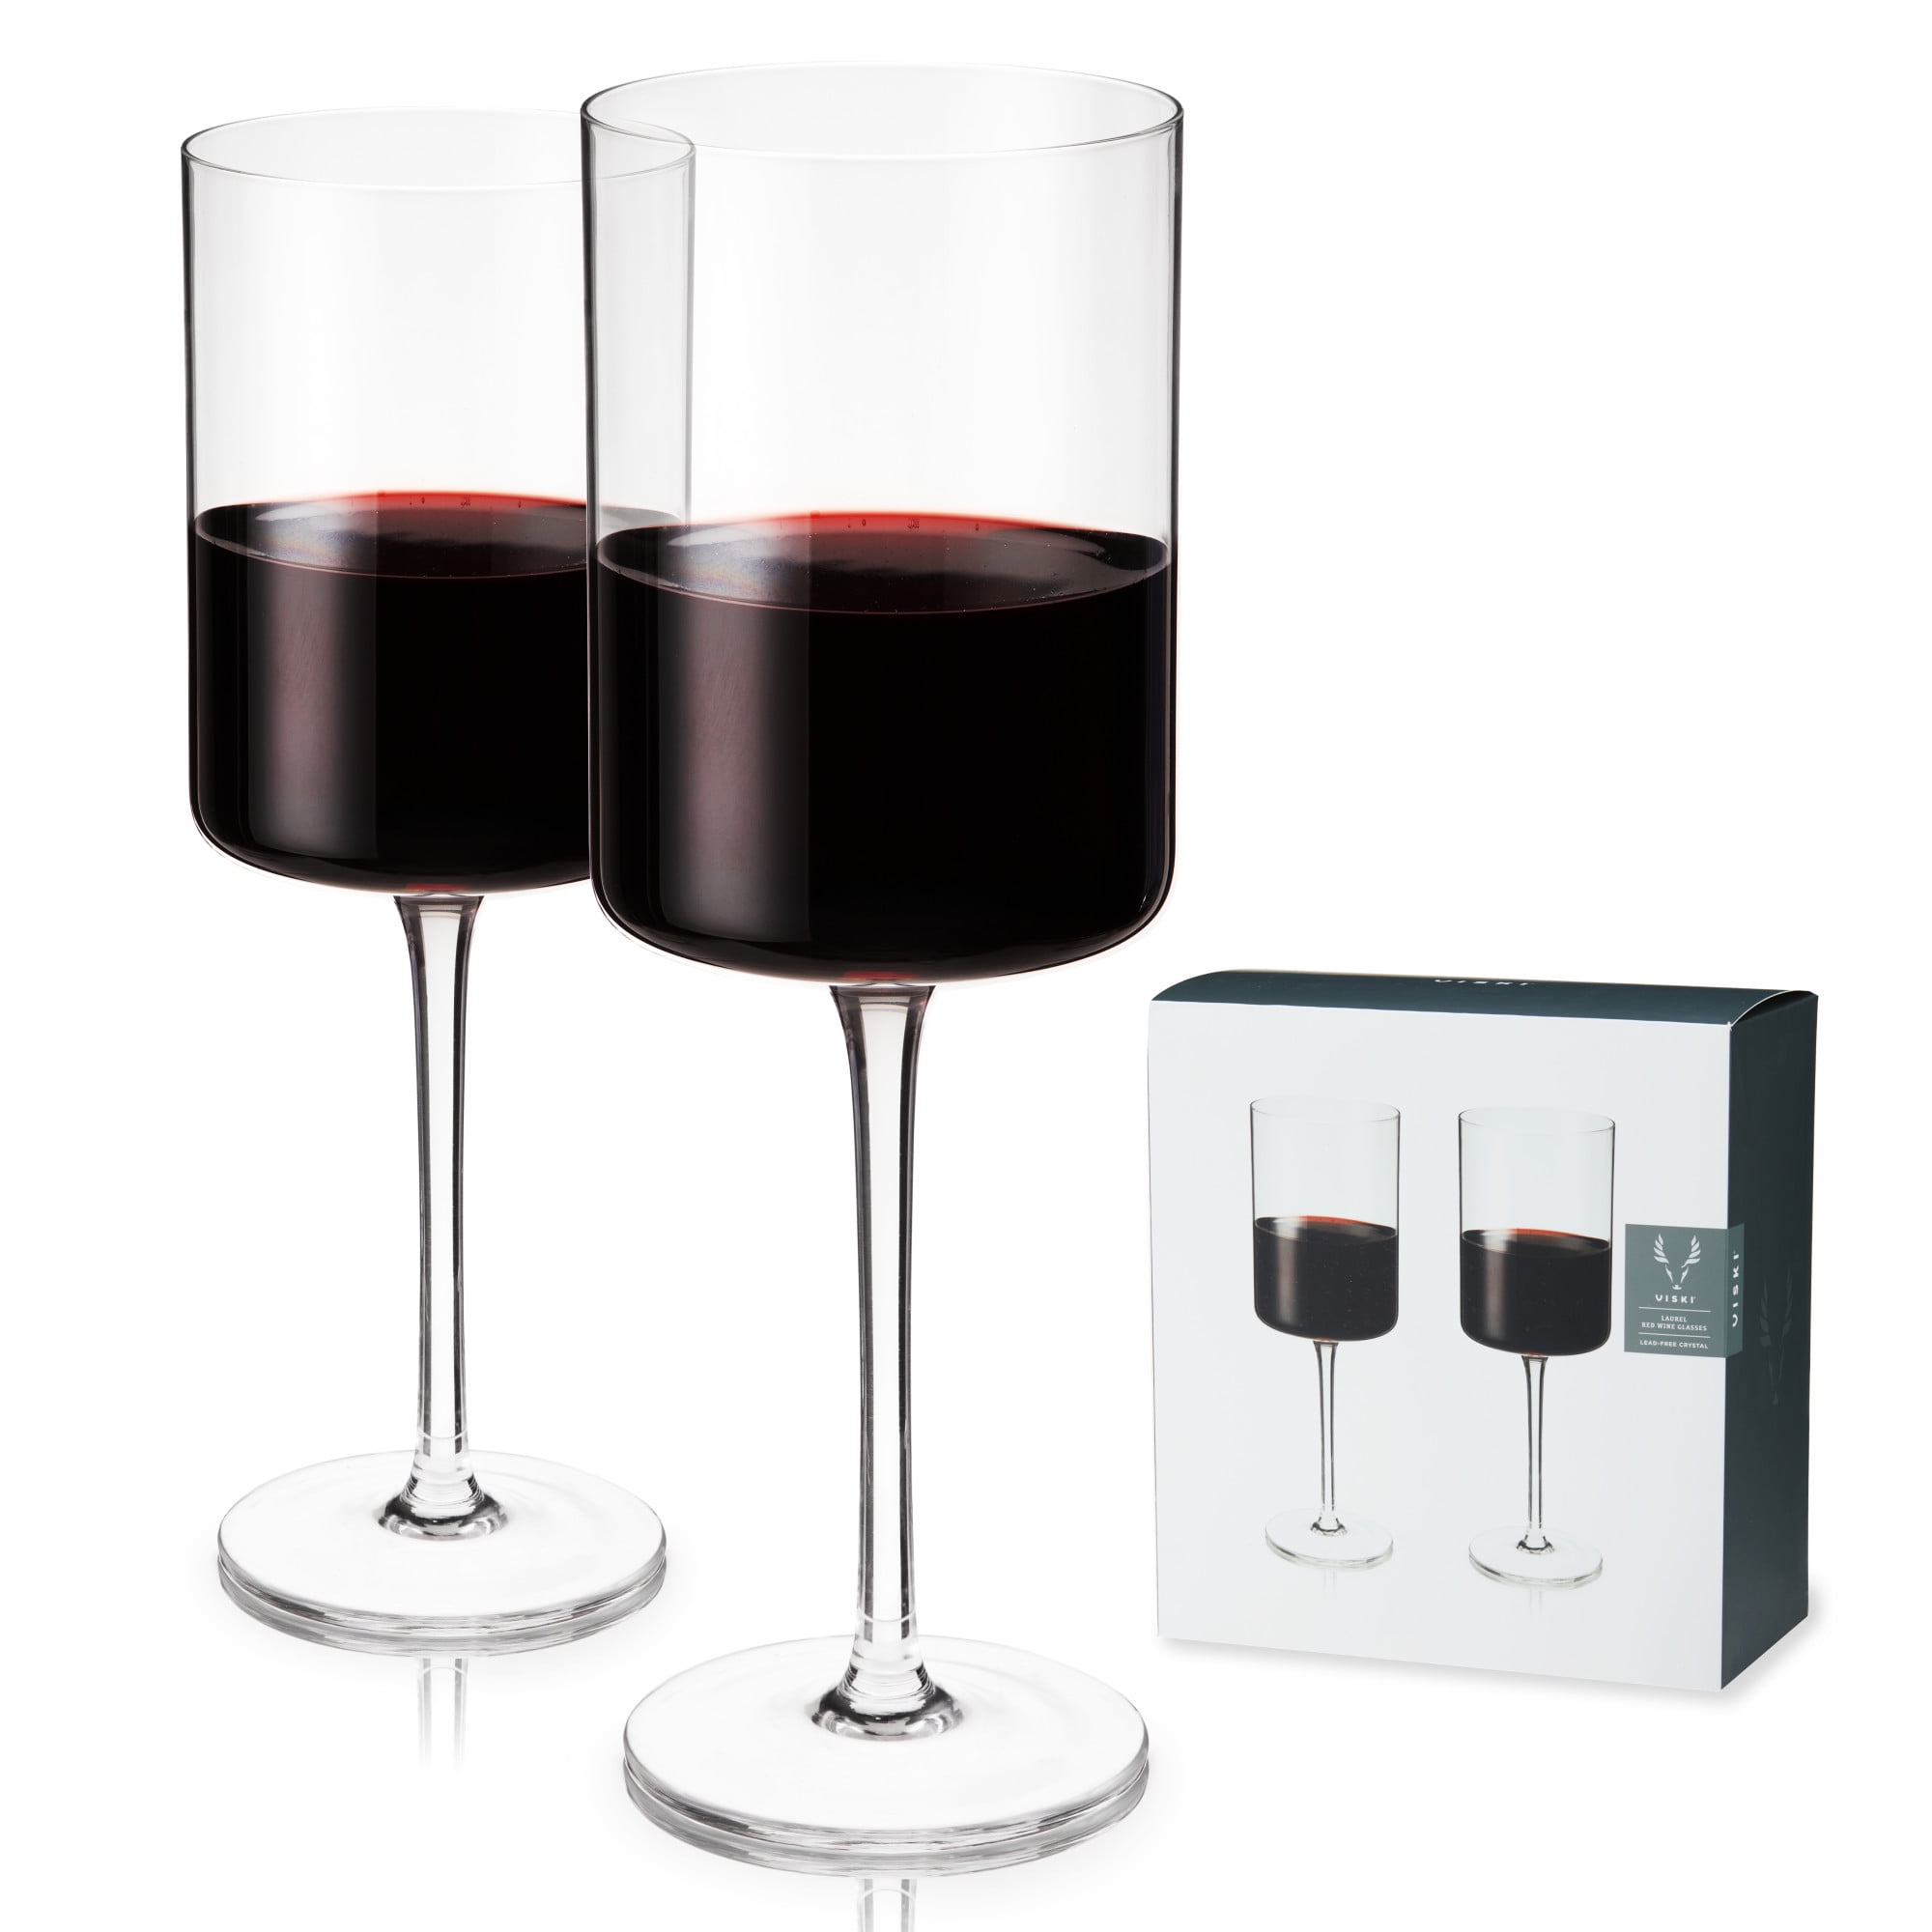 Viski Reserve European Crystal Burgundy Glasses, Crystal Red Wine Glasses, European Made Glassware, Stemmed Wine Glass Set, 31 oz, Set of 4